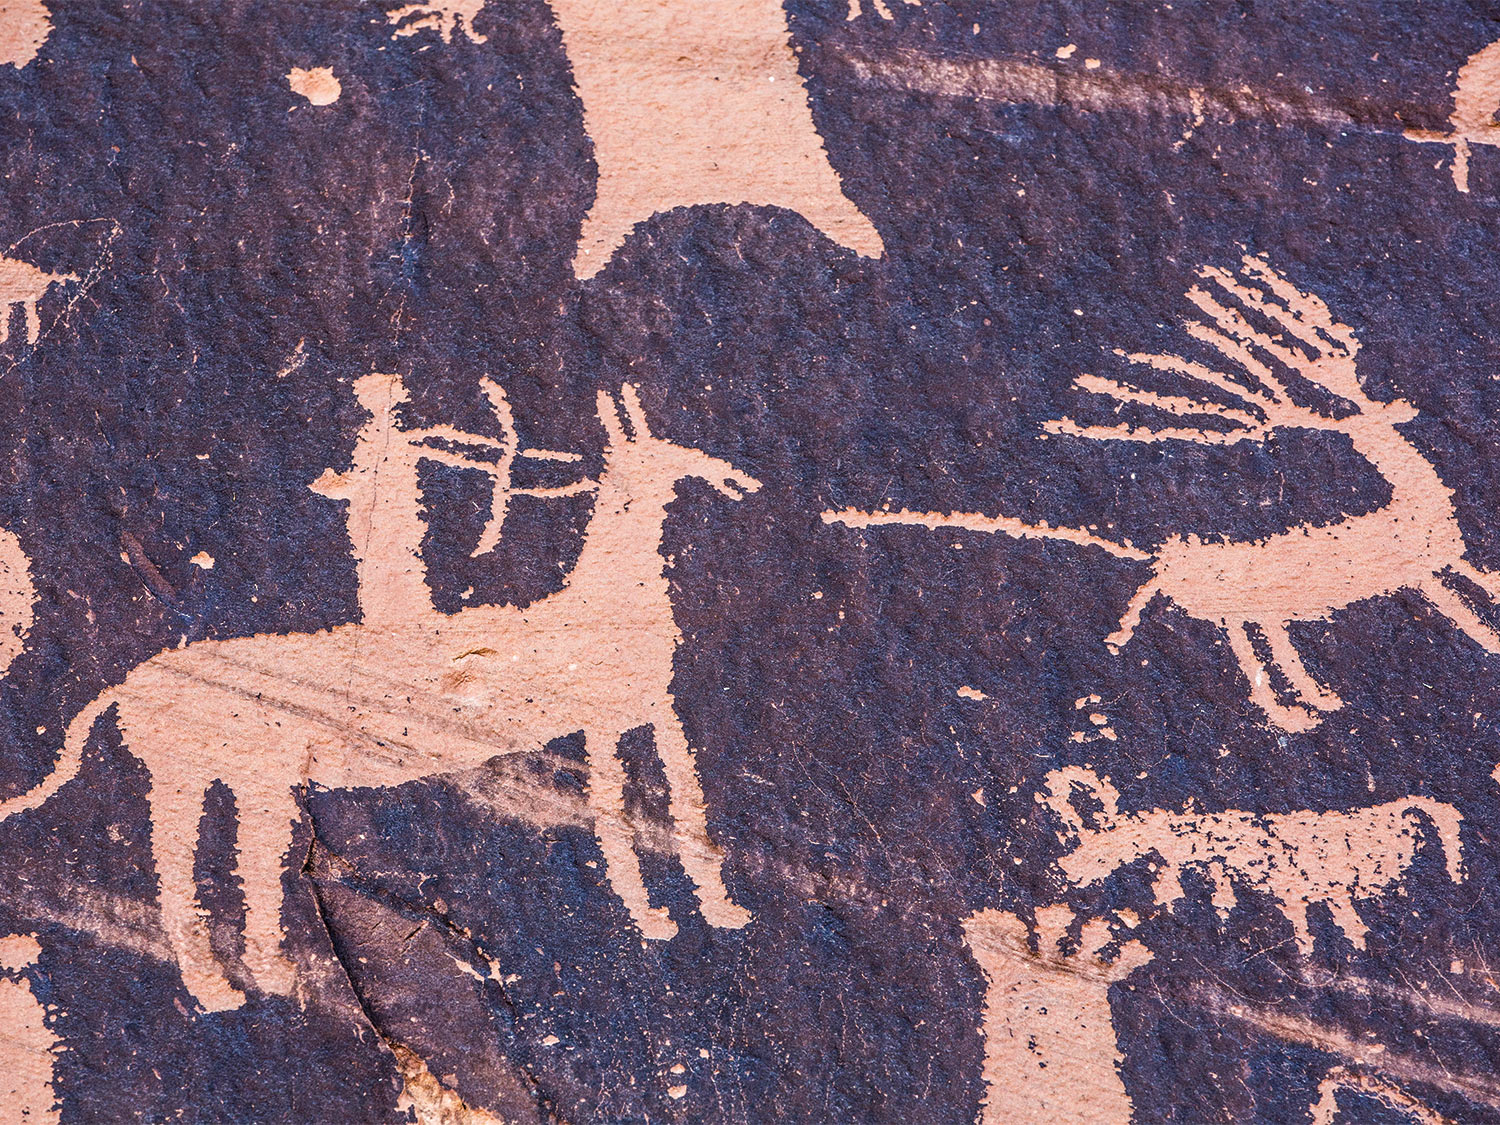 A petroglyph cave painting of a hunter firing an arrow at a deer.